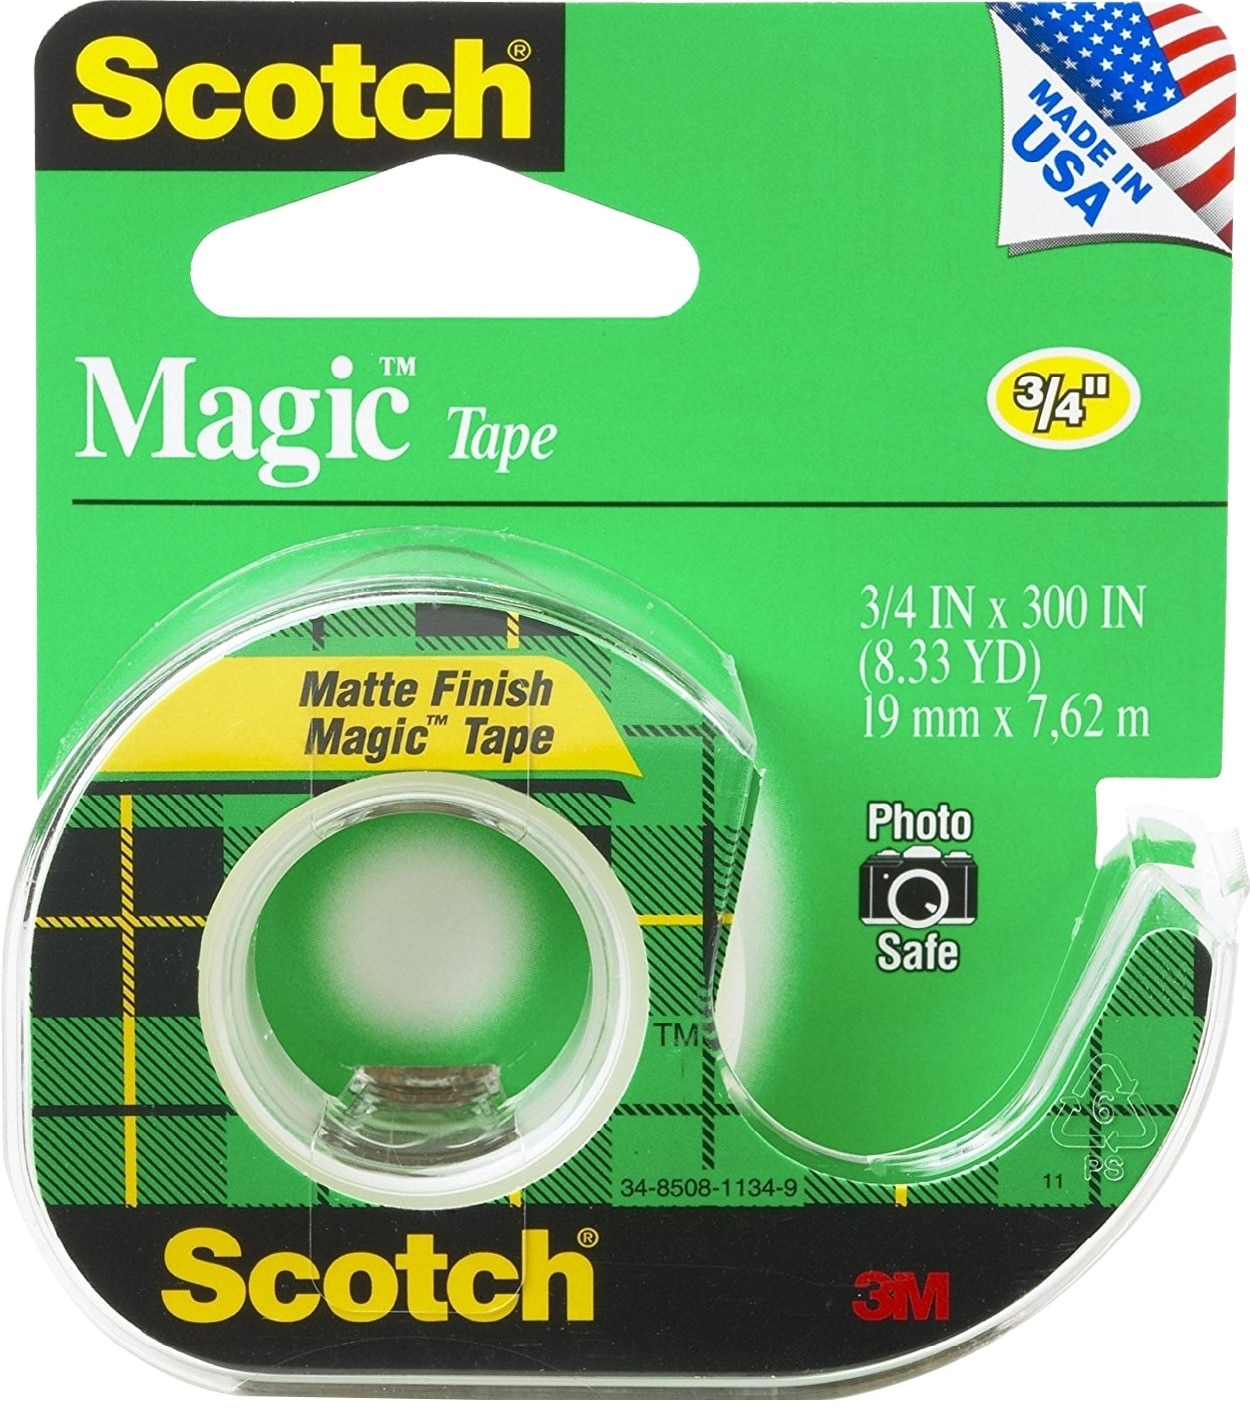 3M Scotch Magic Tape Dispensered Roll 34 x 300